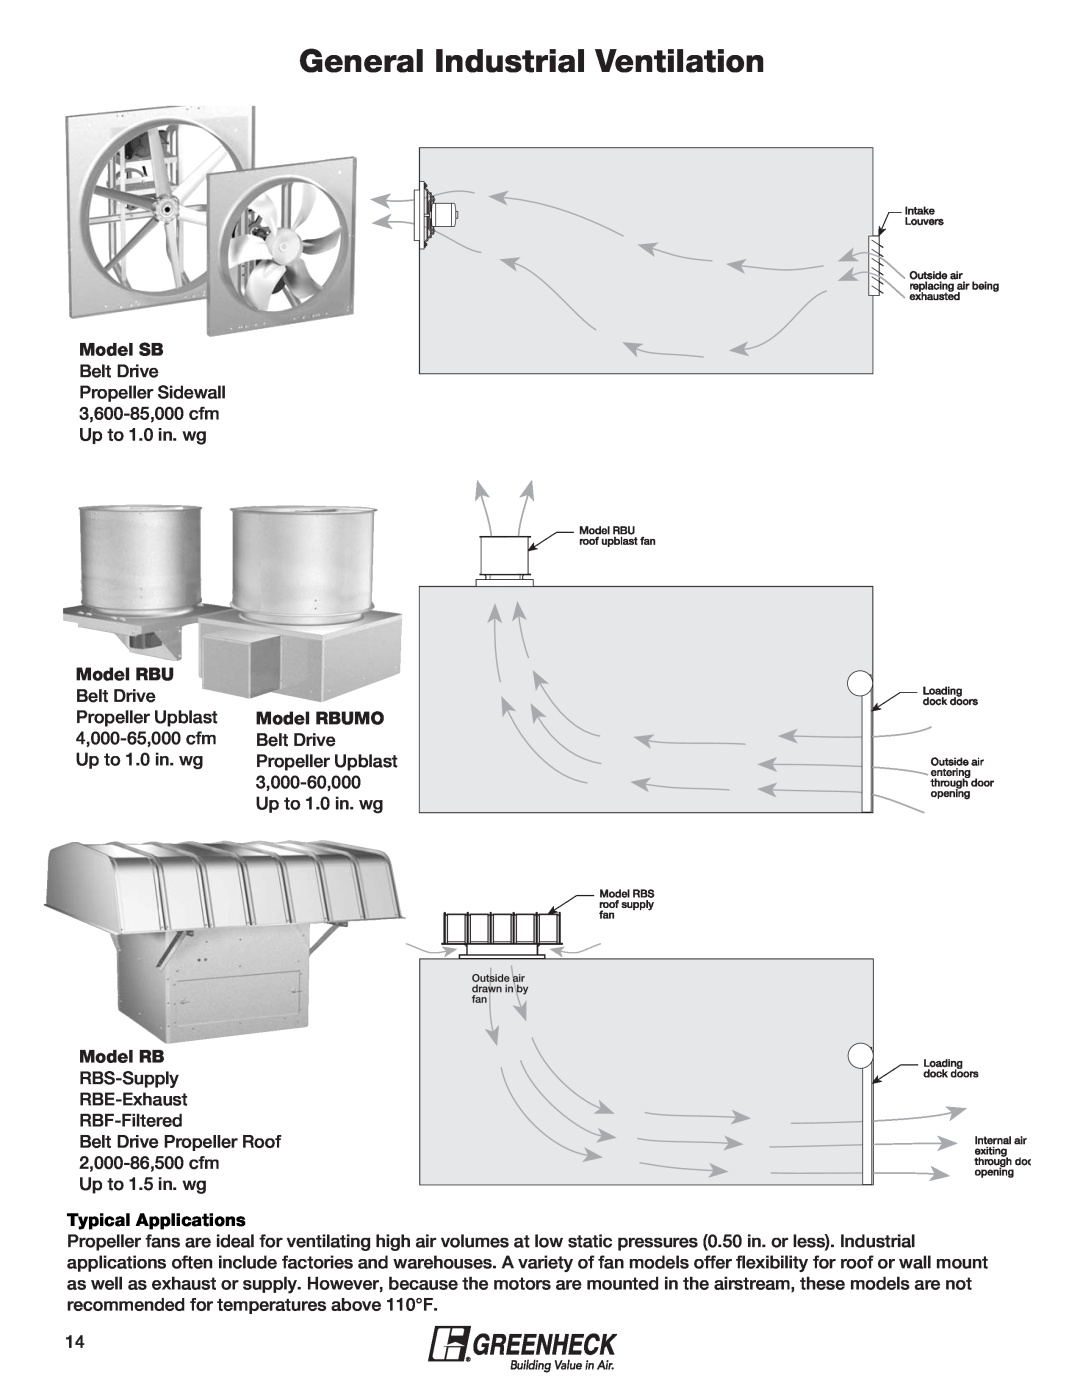 Greenheck Fan 240XP-CUb manual General Industrial Ventilation, Model SB, Model RBUMO, Typical Applications 